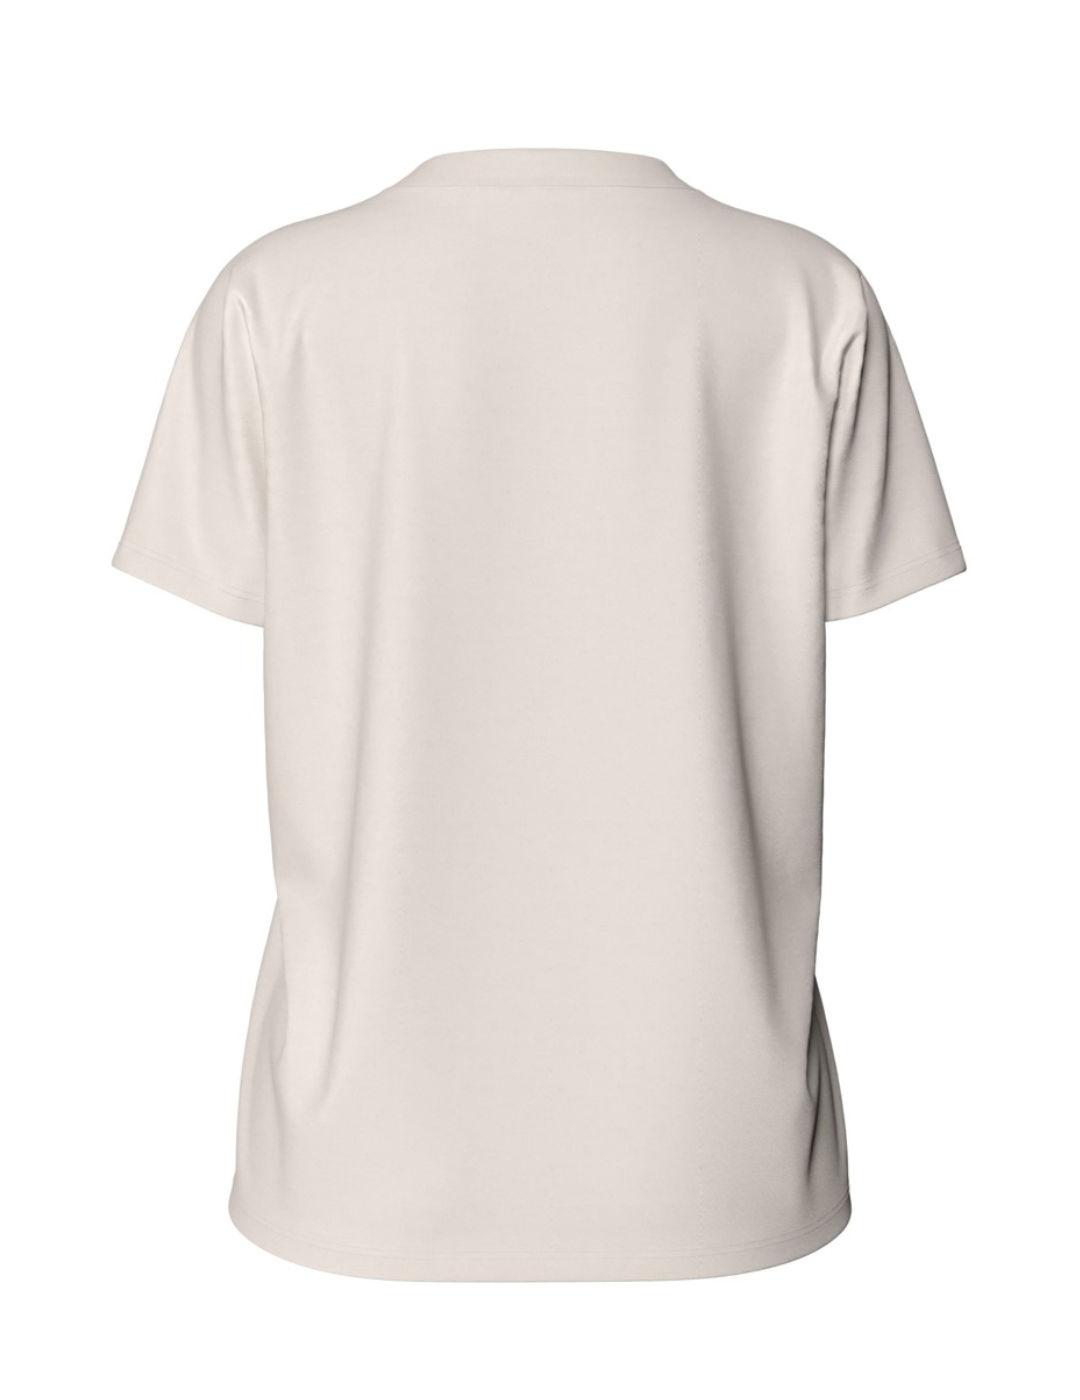 Camiseta Vila Pure blanca manga corta para mujer